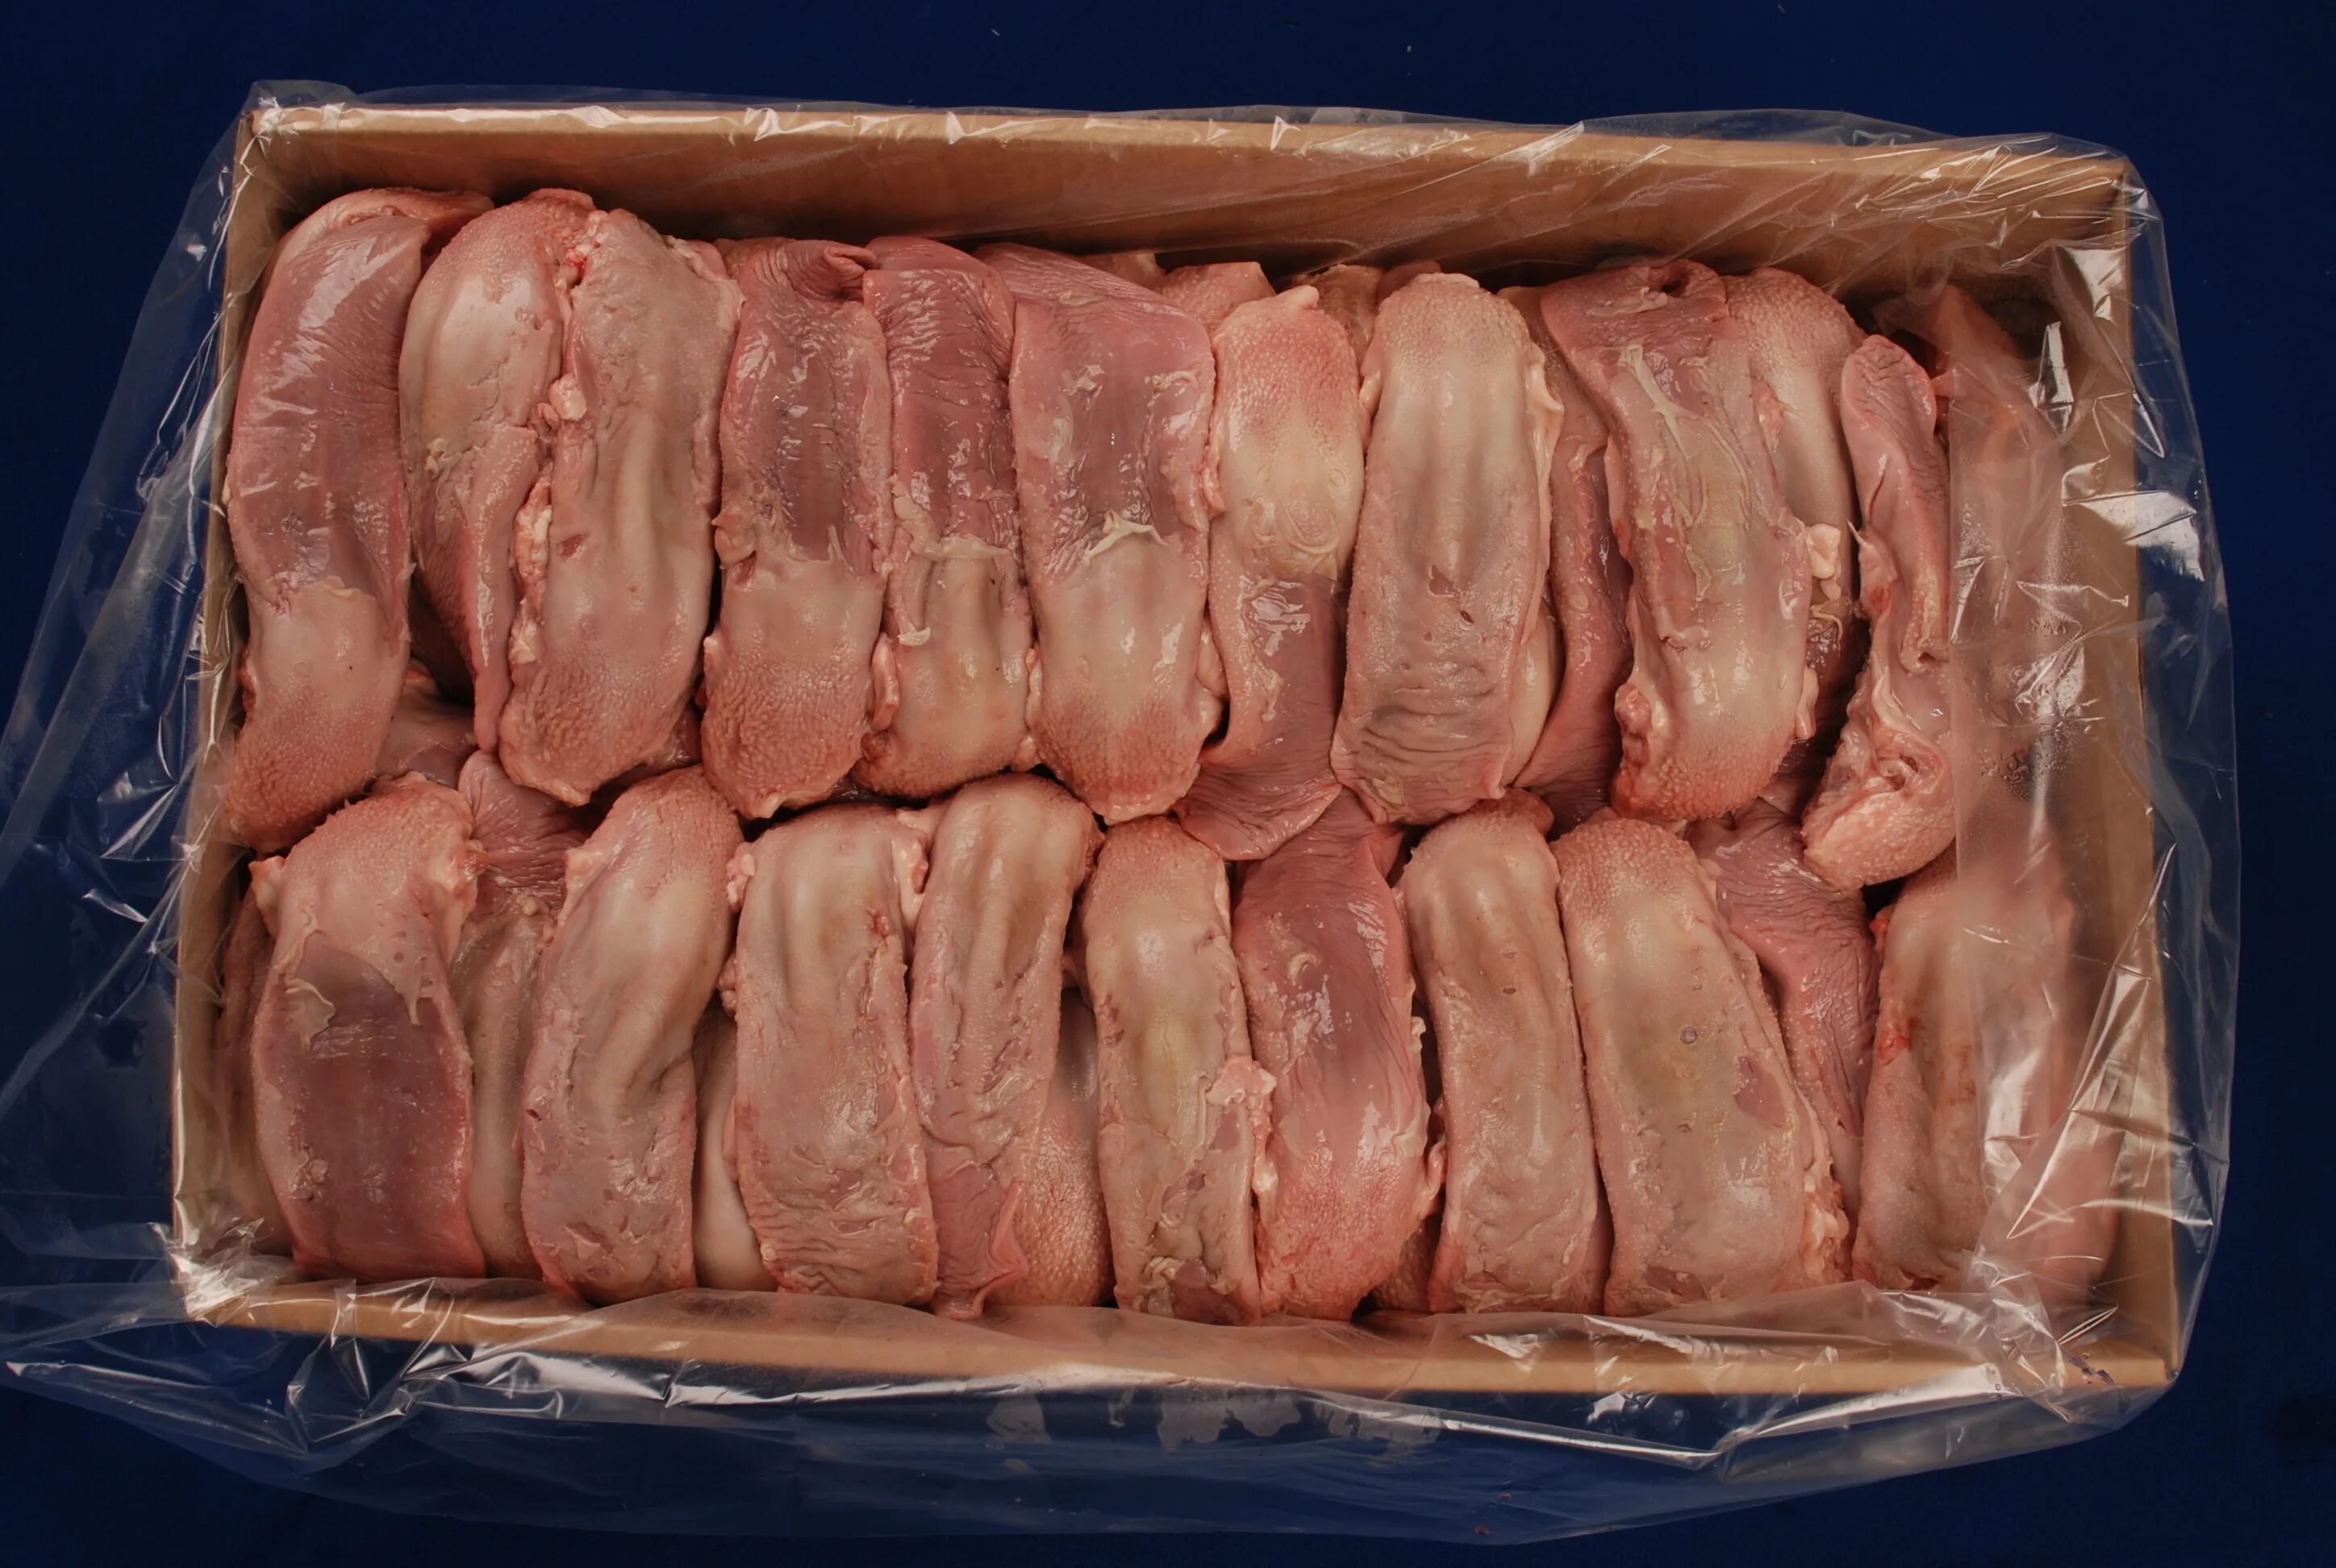 Купить мясо в нижнем новгороде. Раевский мясокомбинат Альшей-мясо. Язык свиной (замороженный).